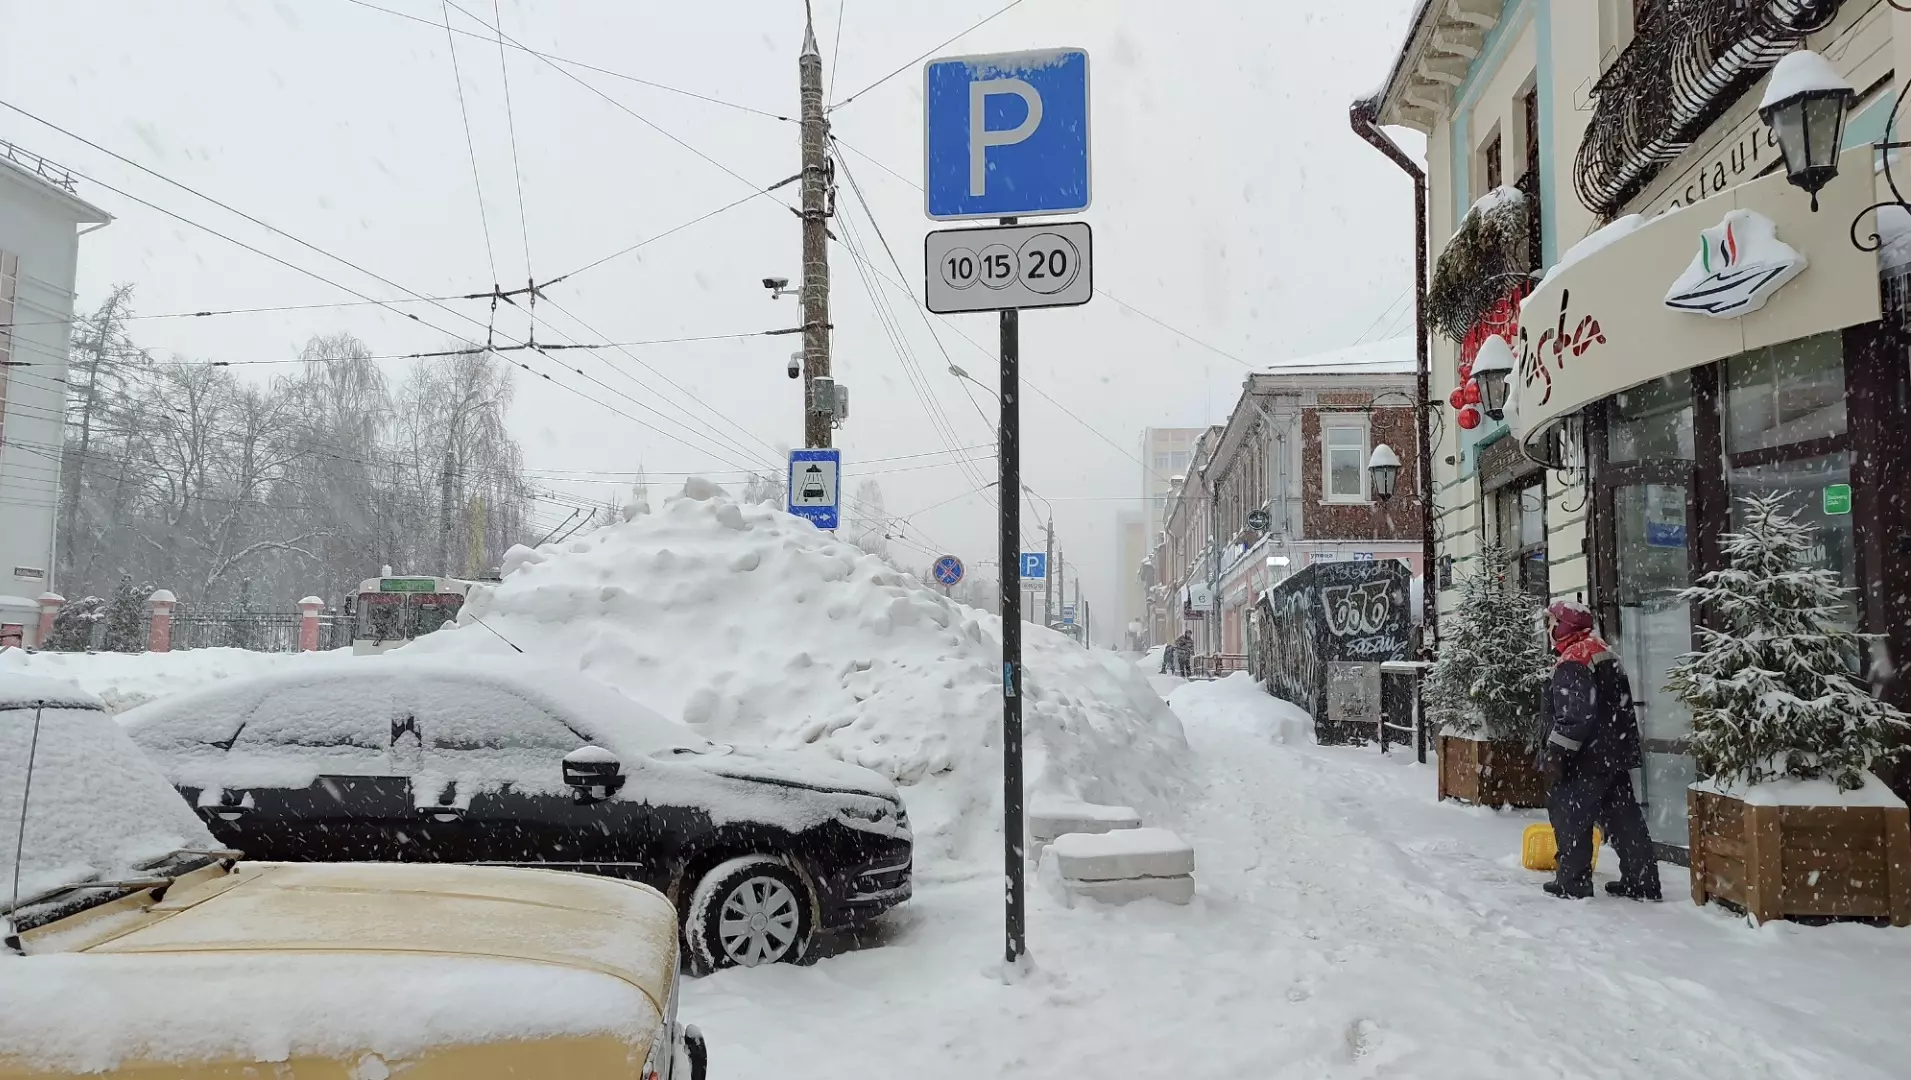 Работу платных парковок усовершенствуют в Ижевске